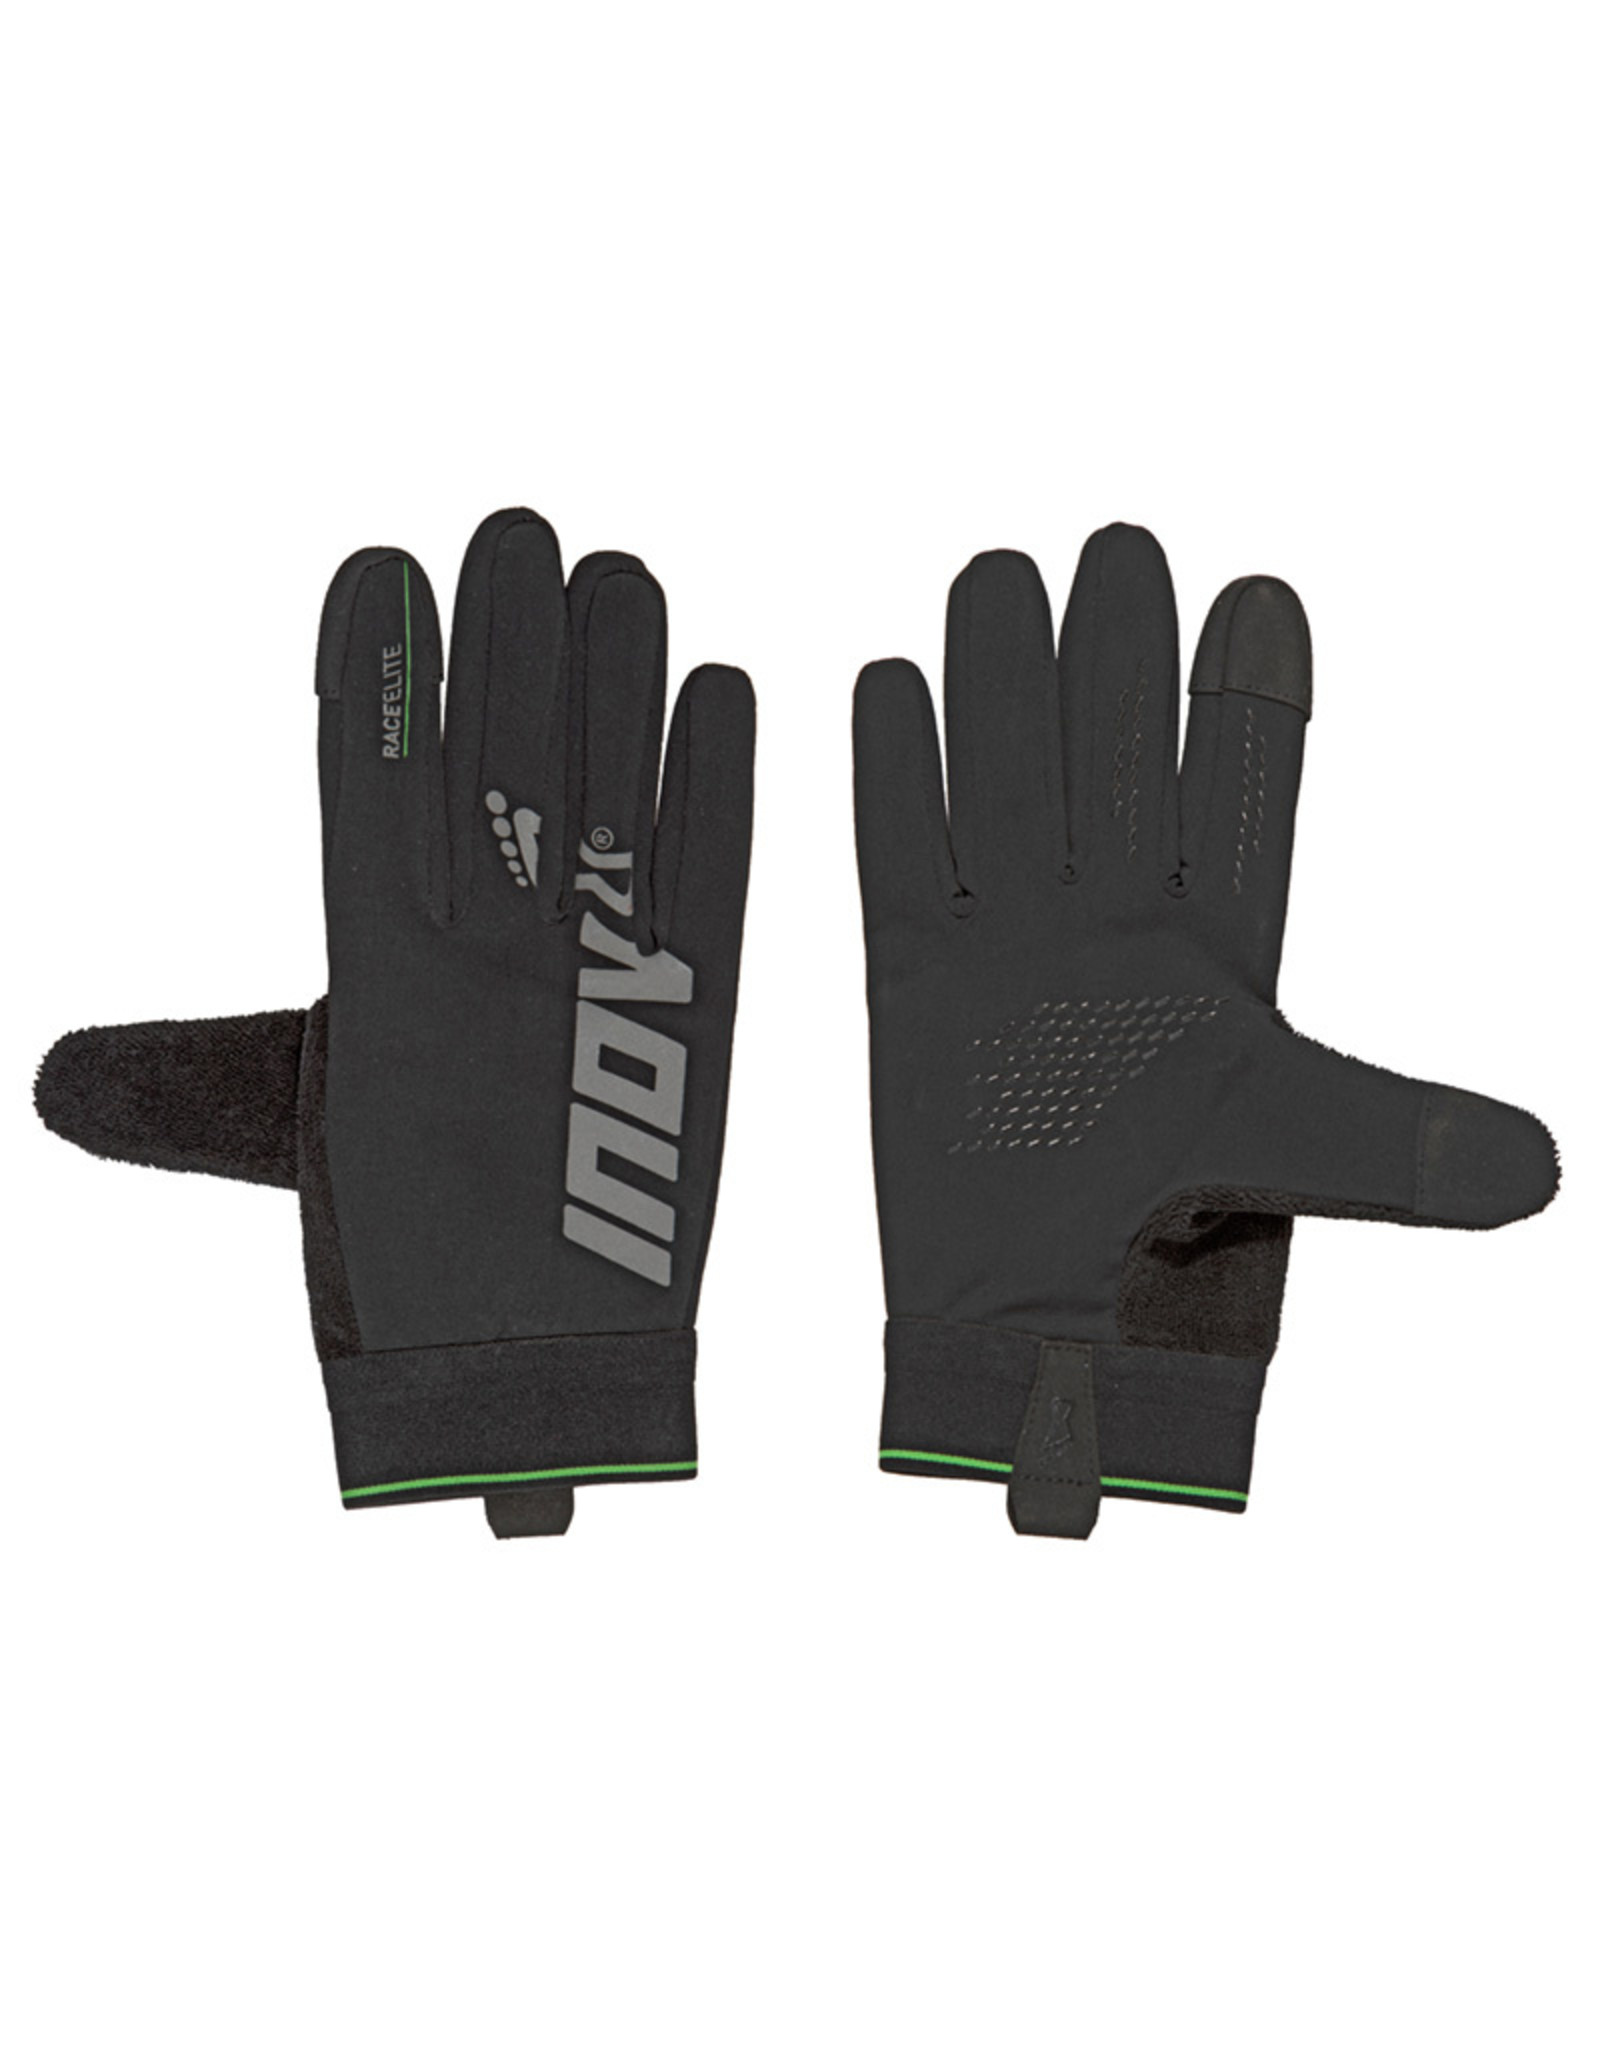 Inov-8 Race Elite Glove Gant - Noir